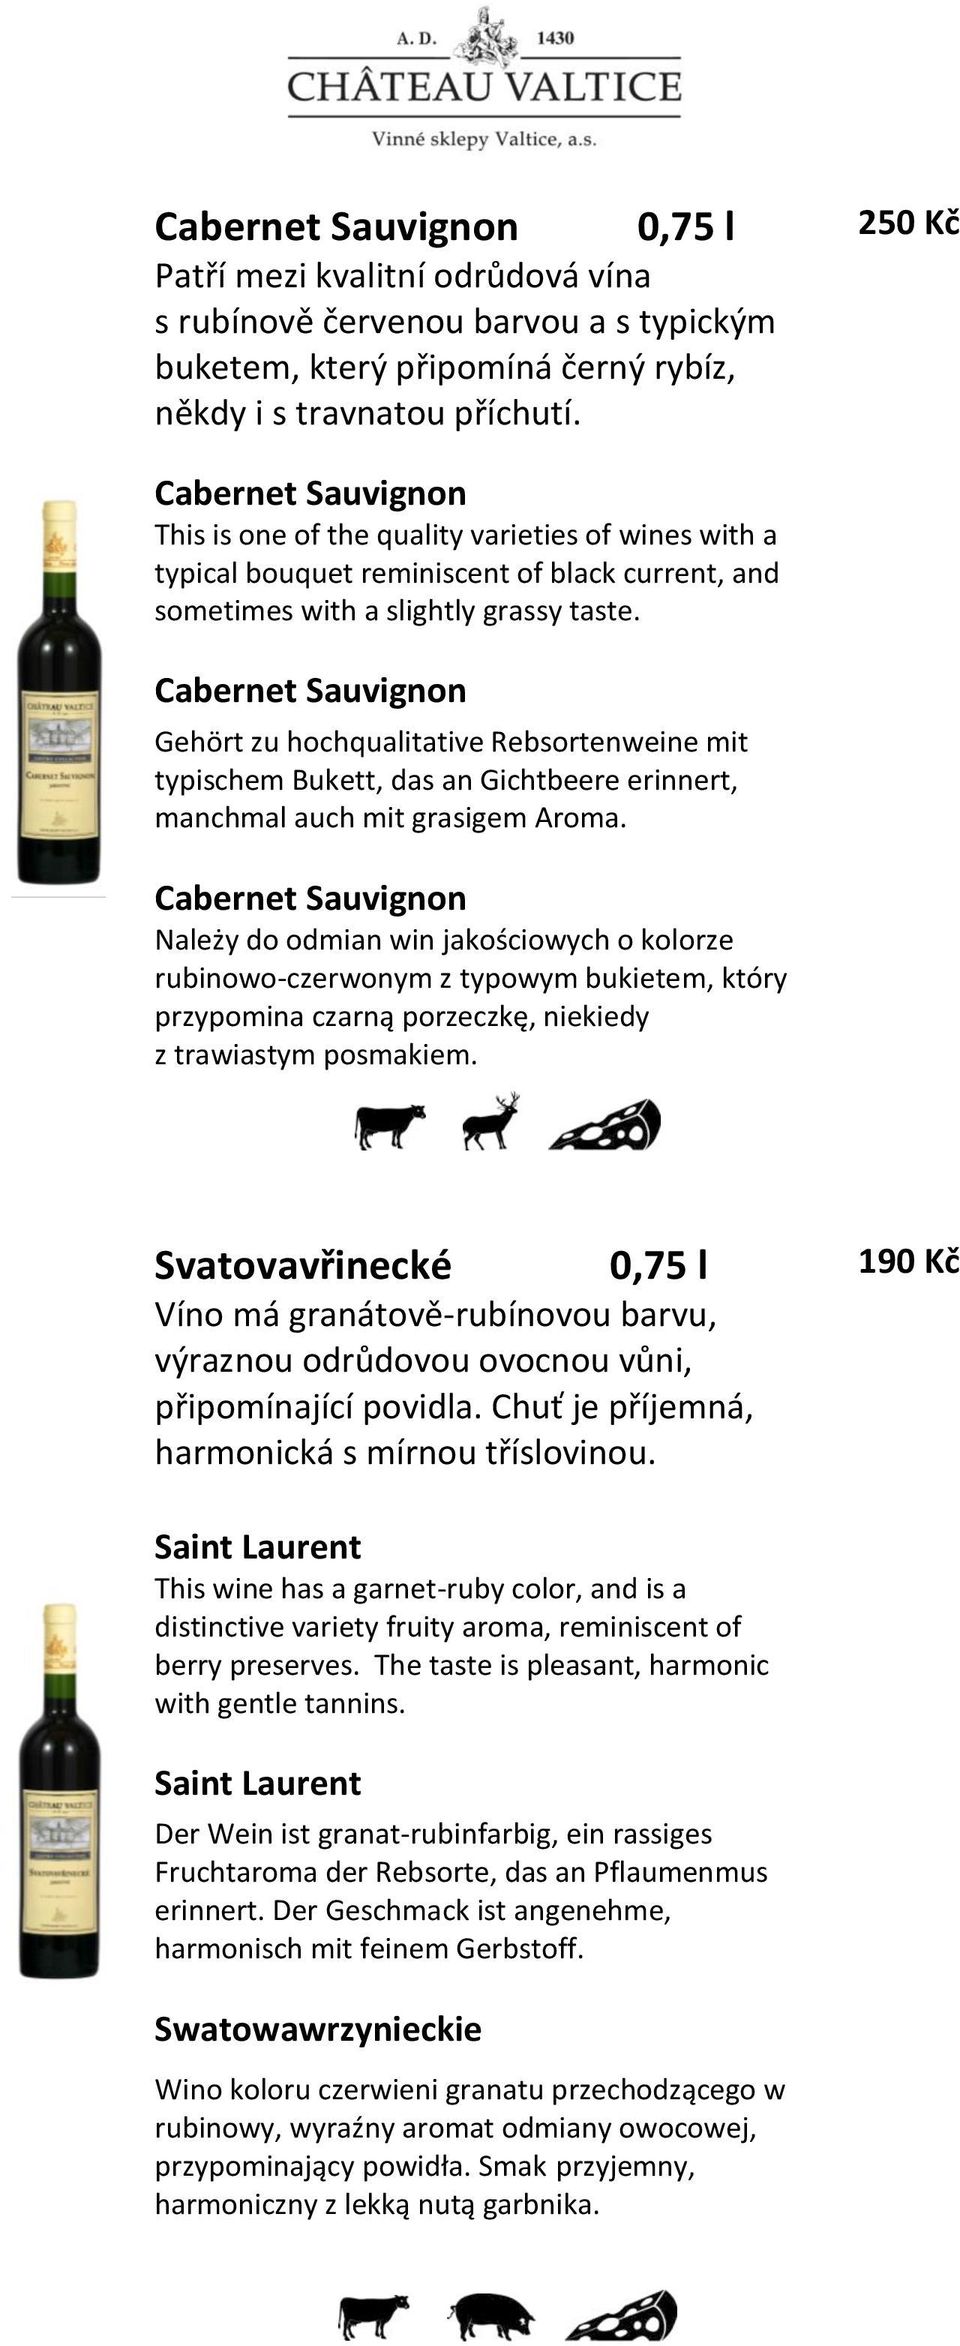 Cabernet Sauvignon Gehört zu hochqualitative Rebsortenweine mit typischem Bukett, das an Gichtbeere erinnert, manchmal auch mit grasigem Aroma.